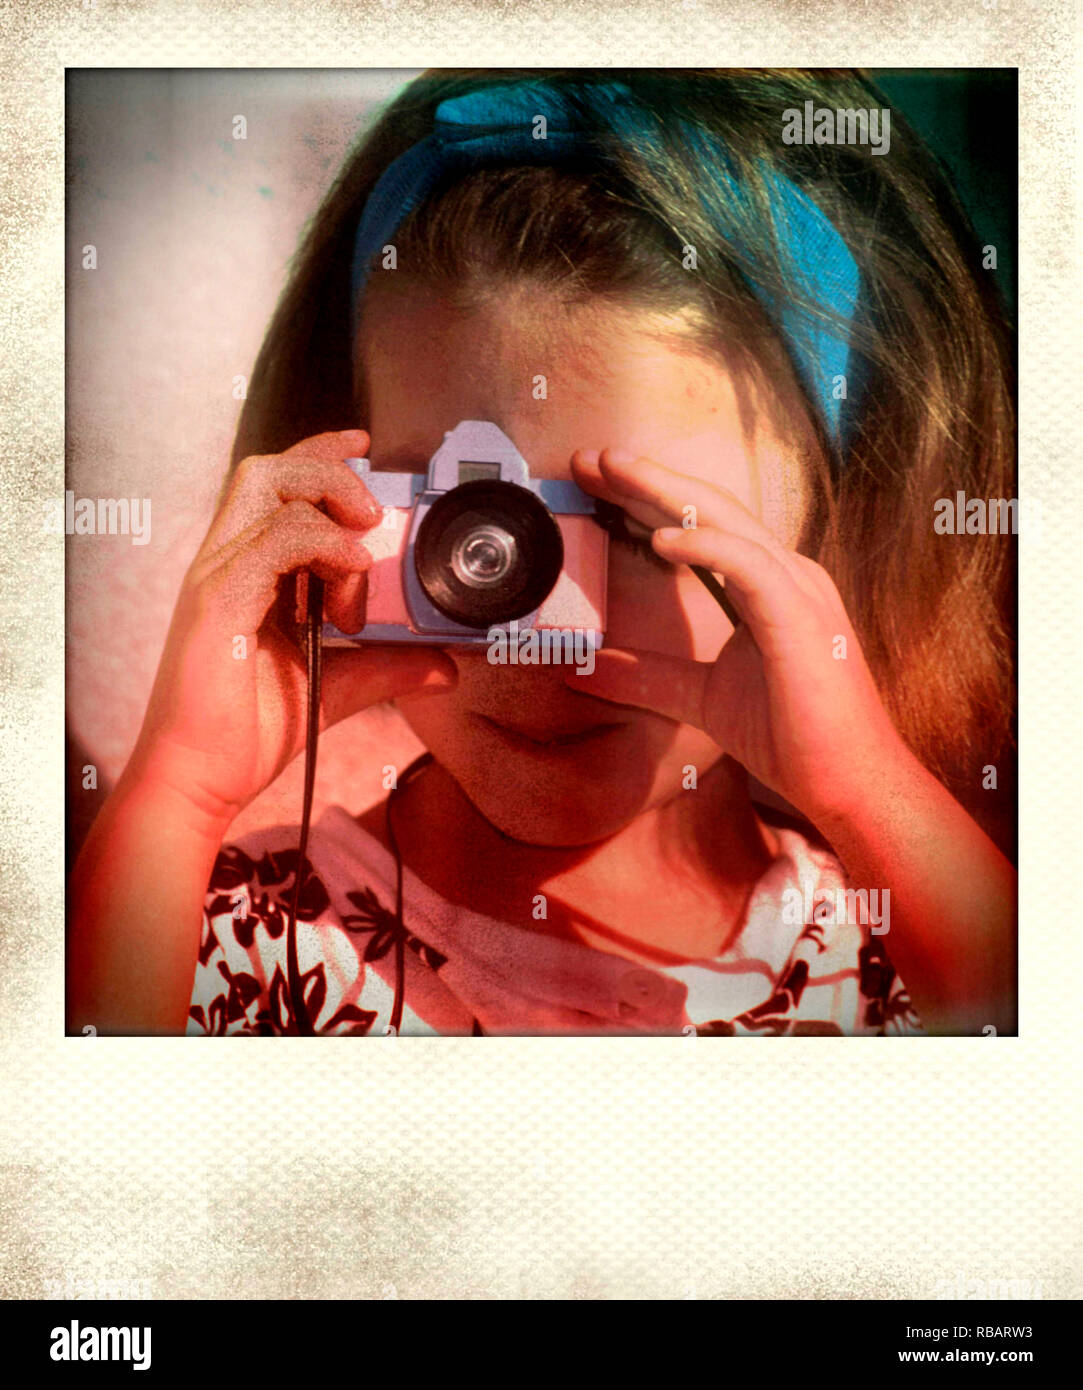 Vintage foto polaroid di bambina, fotografare con una fotocamera